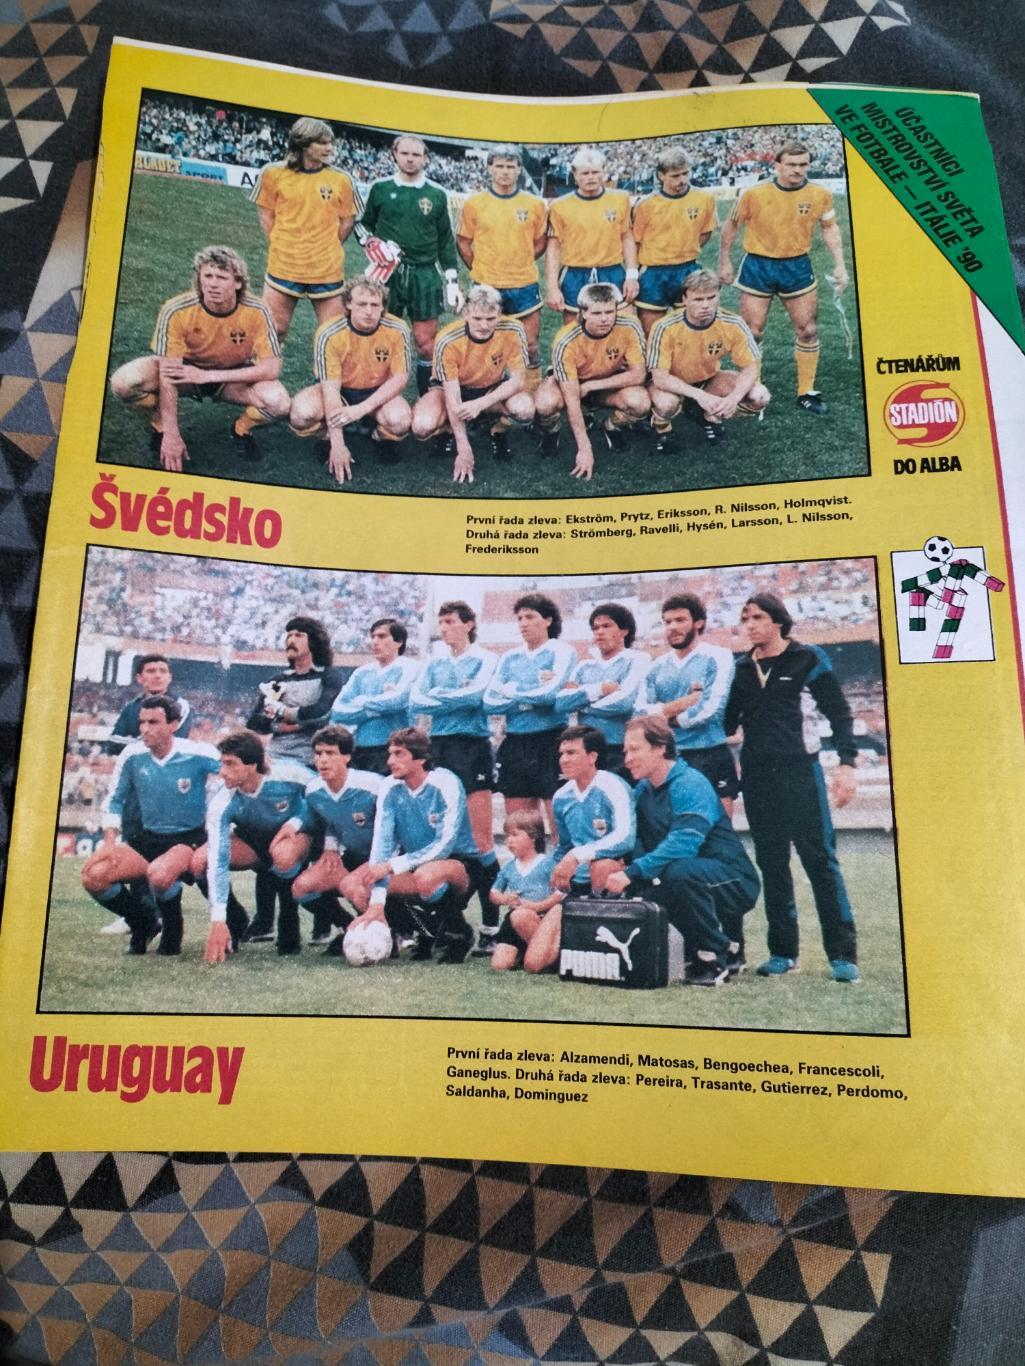 Постер из журнала Стадион.Сб.Швеции и Уругвая.